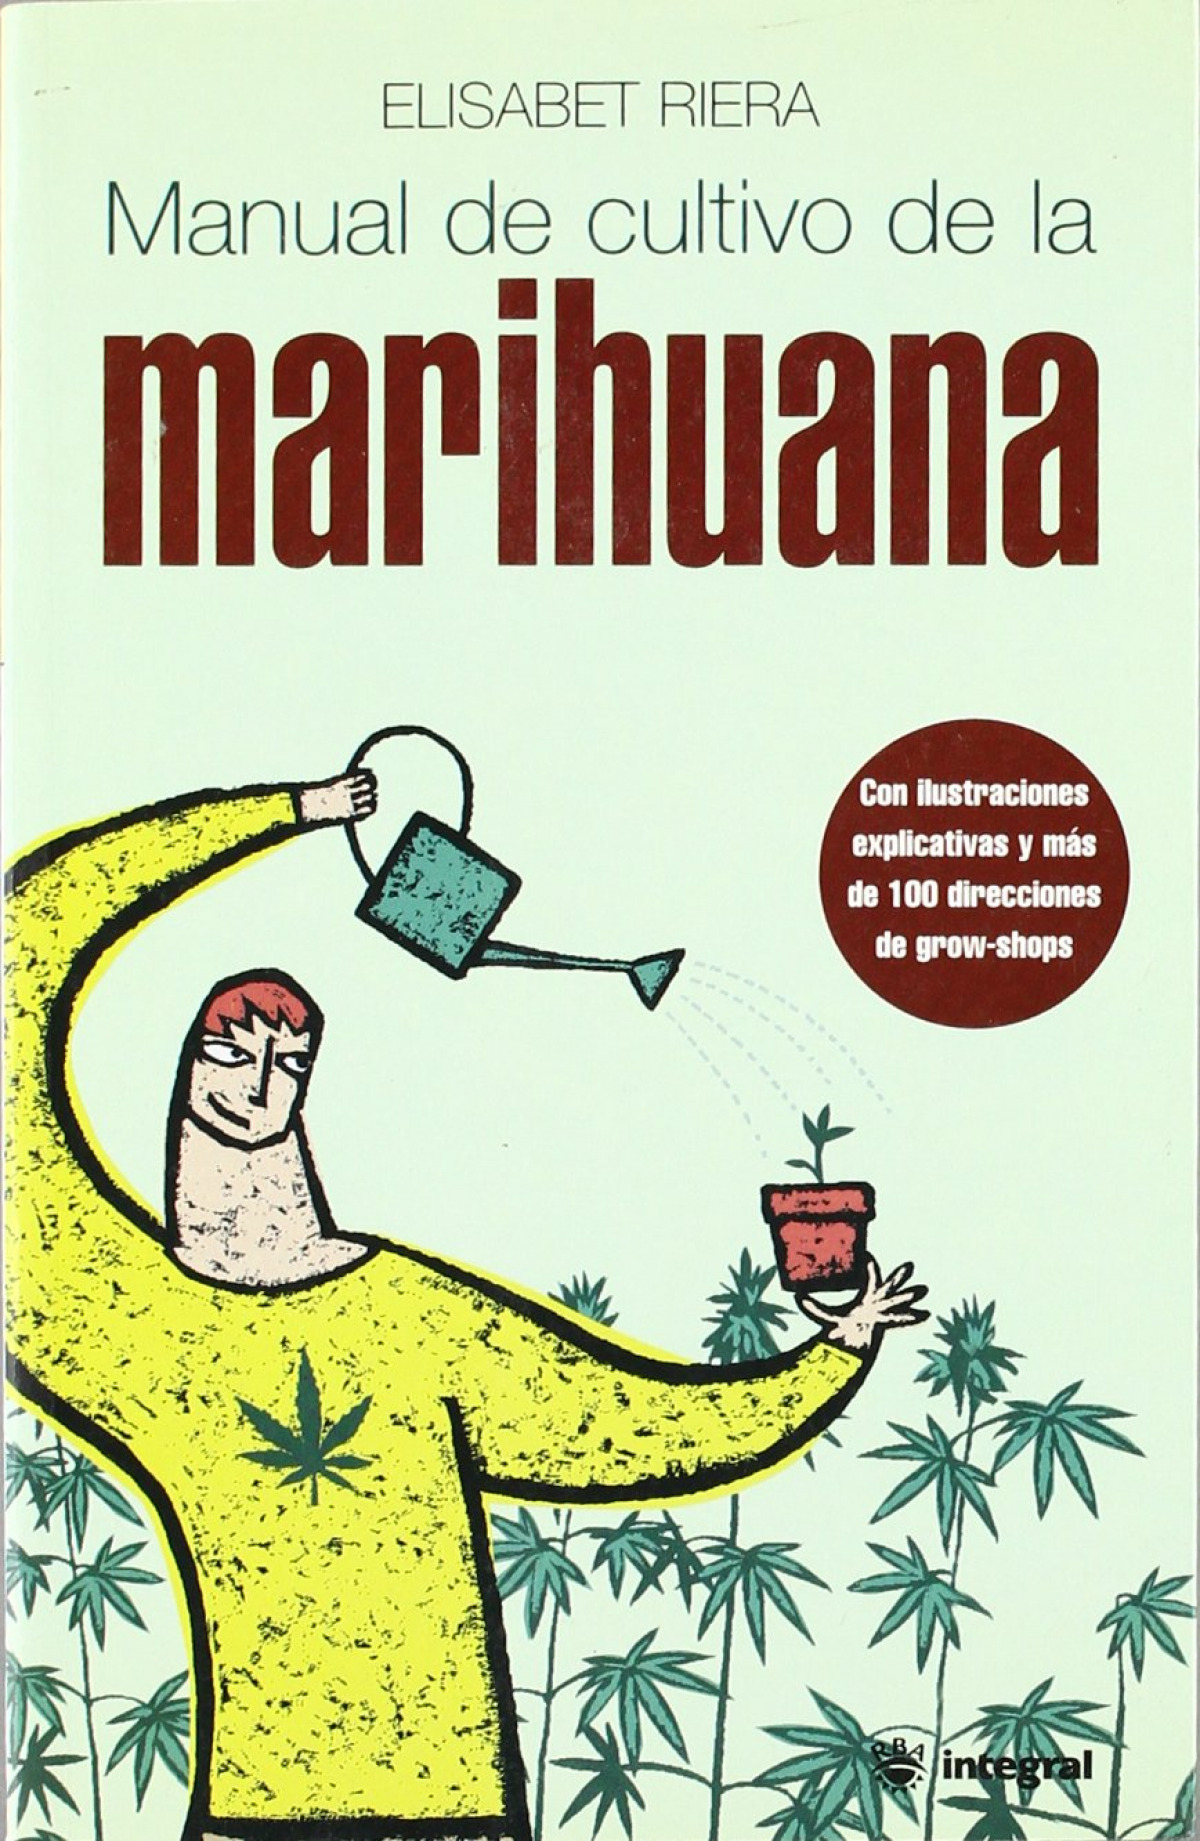 Manual de cultivo de la marihuana - Riera, Elisabeth